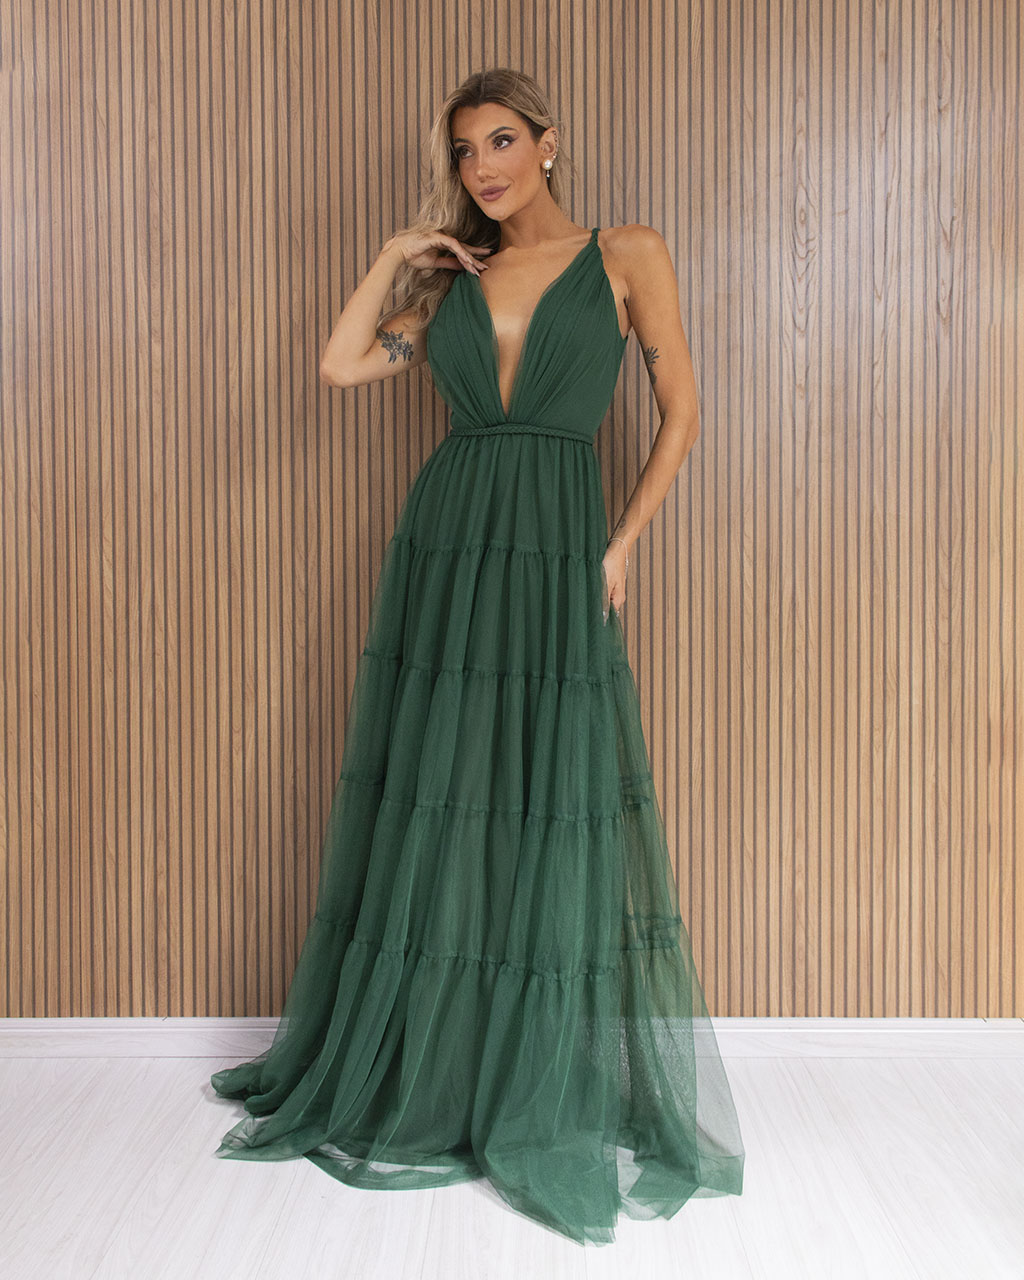 Vestido Longo Verde Esmeralda em Tule Raquel - Empório NM